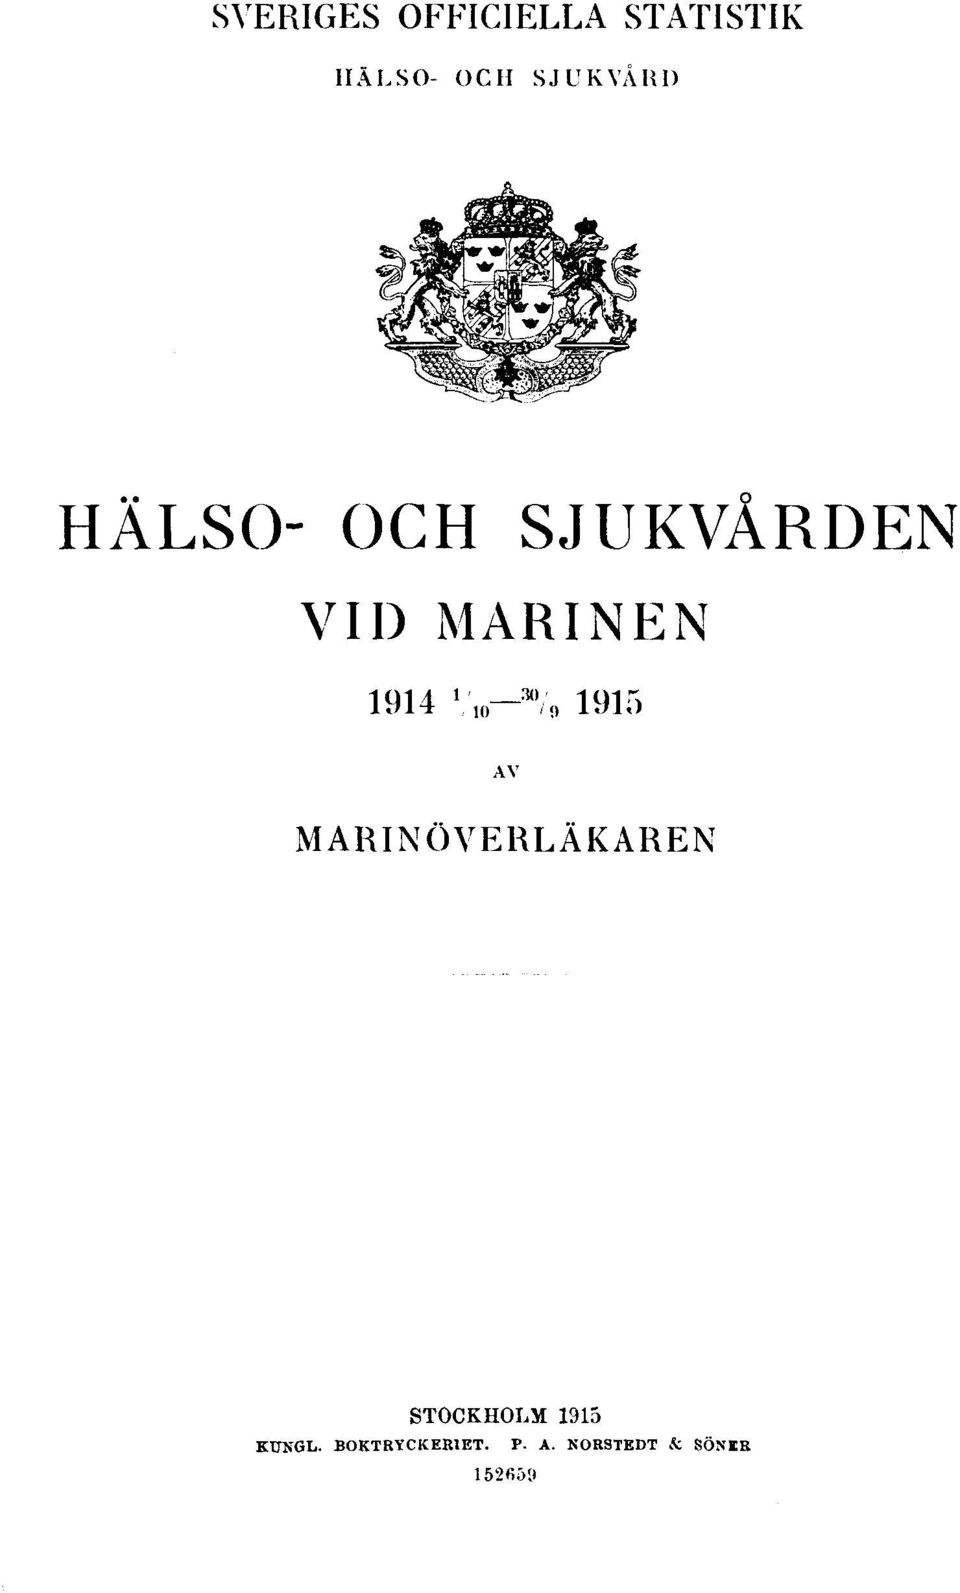 1 /10-30 /9 1915 AV MARINÖVERLÄKAREN STOCKHOLM